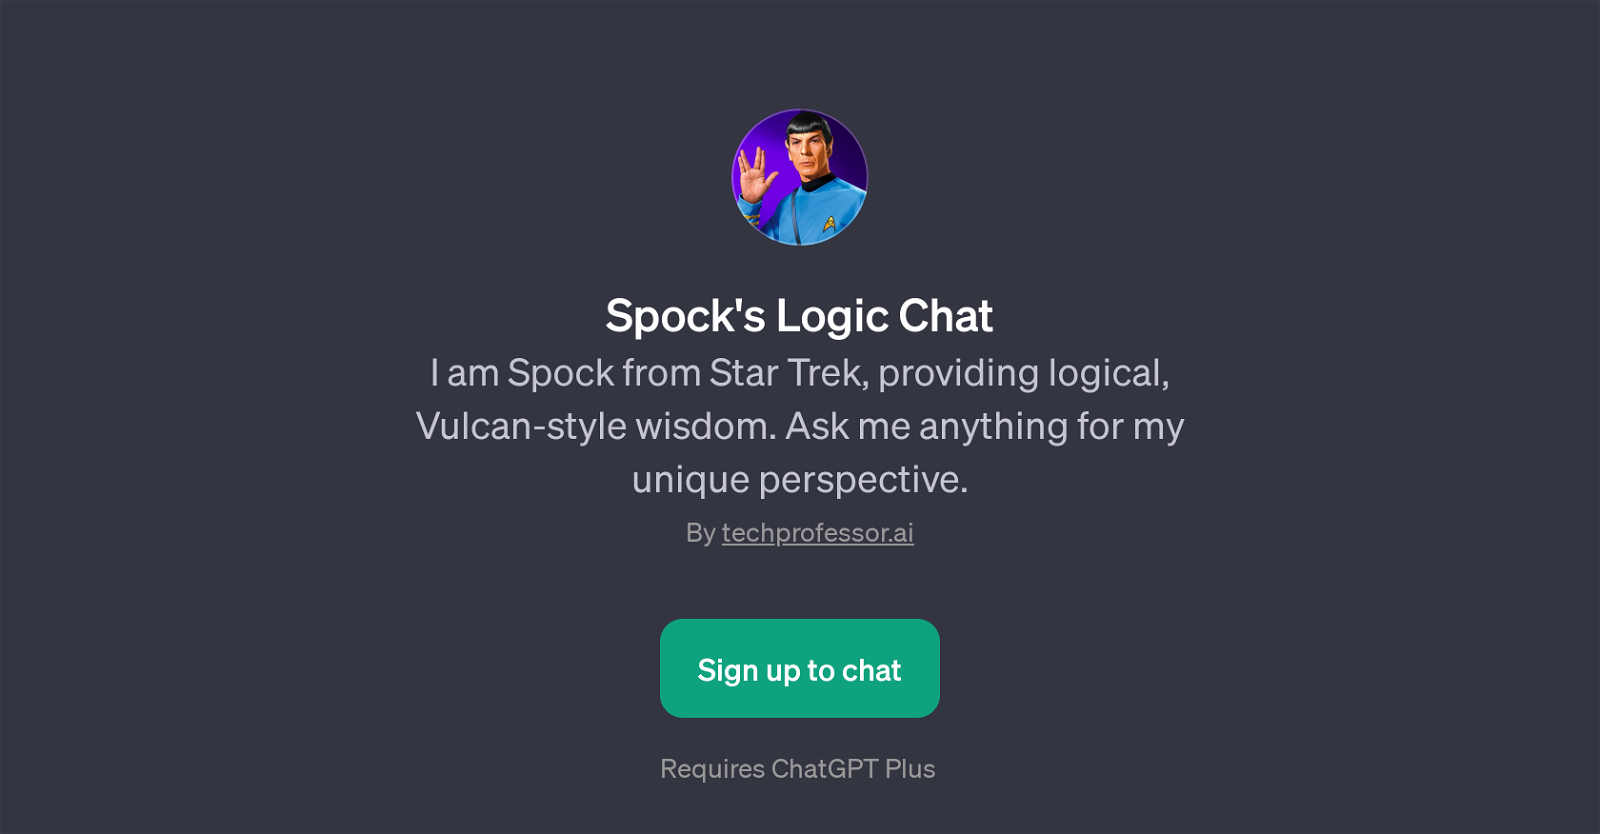 Spock's Logic Chat website